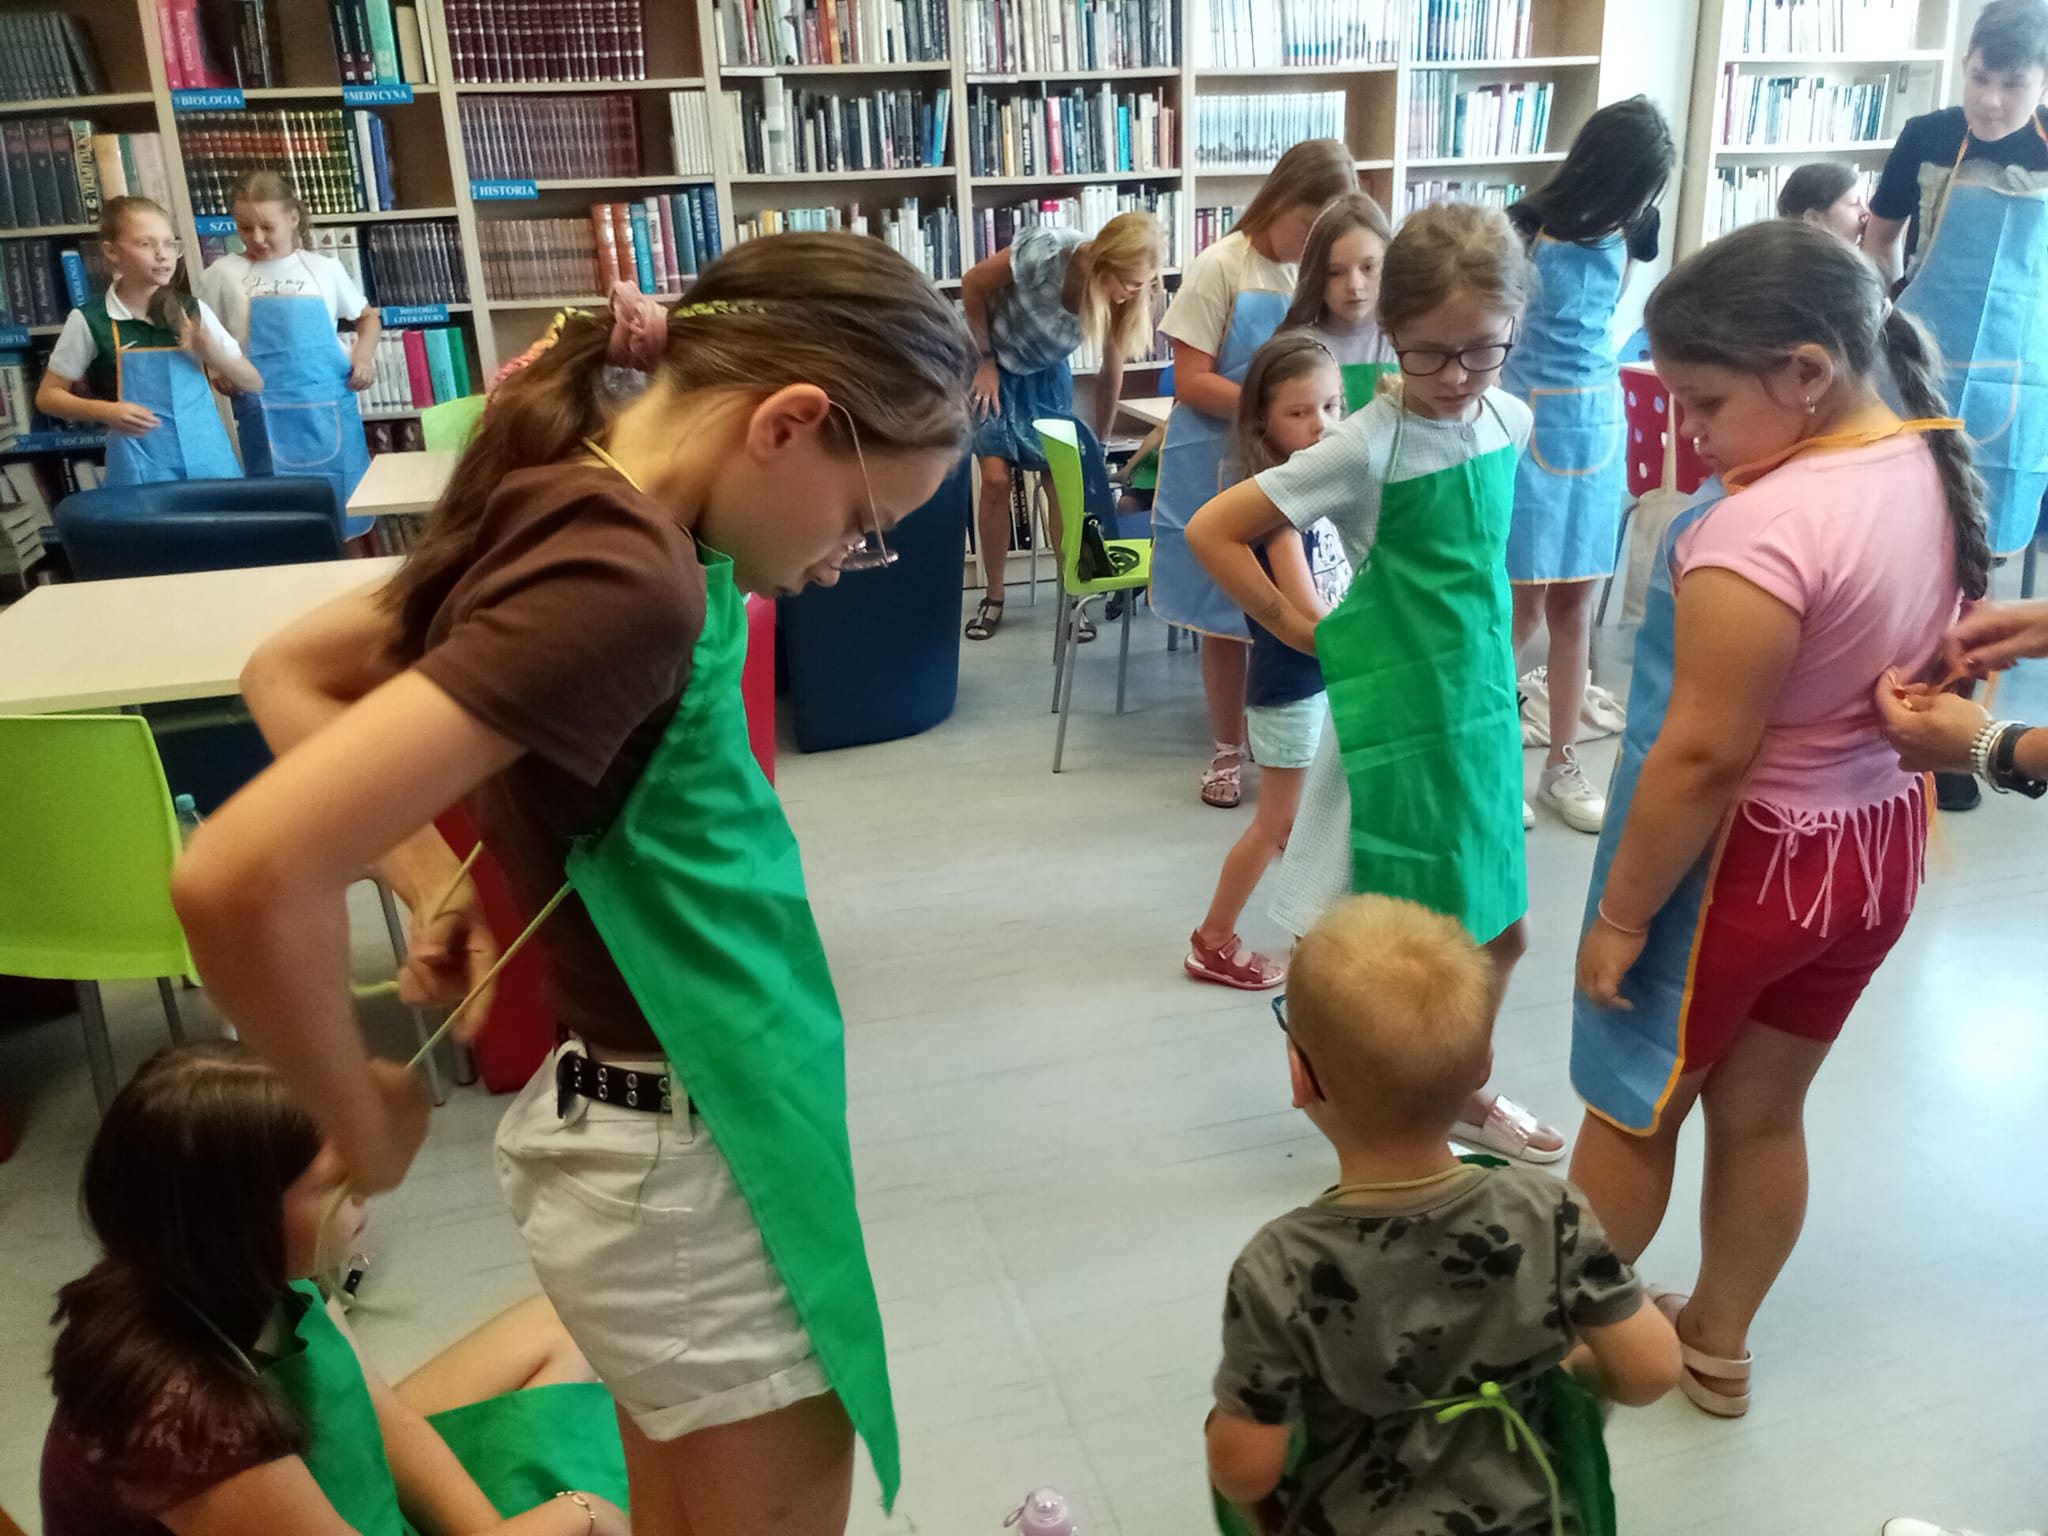 Biblioteka , czytelnia dla dorosłych. dzieci ubierają się w fartuszki ochronne.